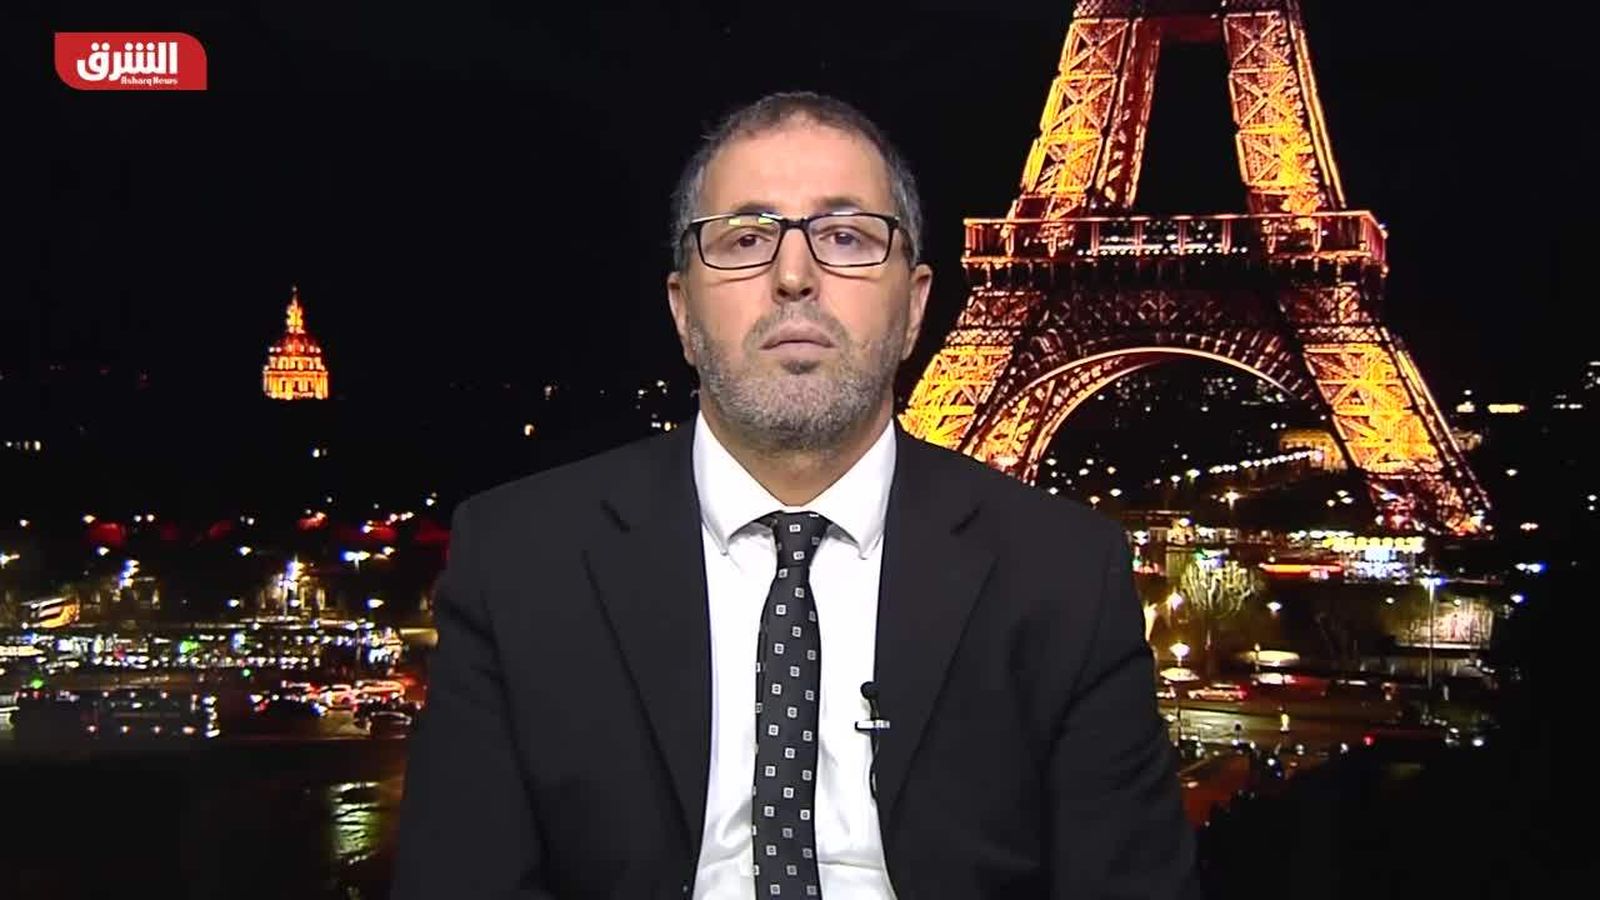 د. توفيق قويدر شيشي: اشتباكات بين محتجين أكراد وقوى الأمن في باريس - Now  الشرق